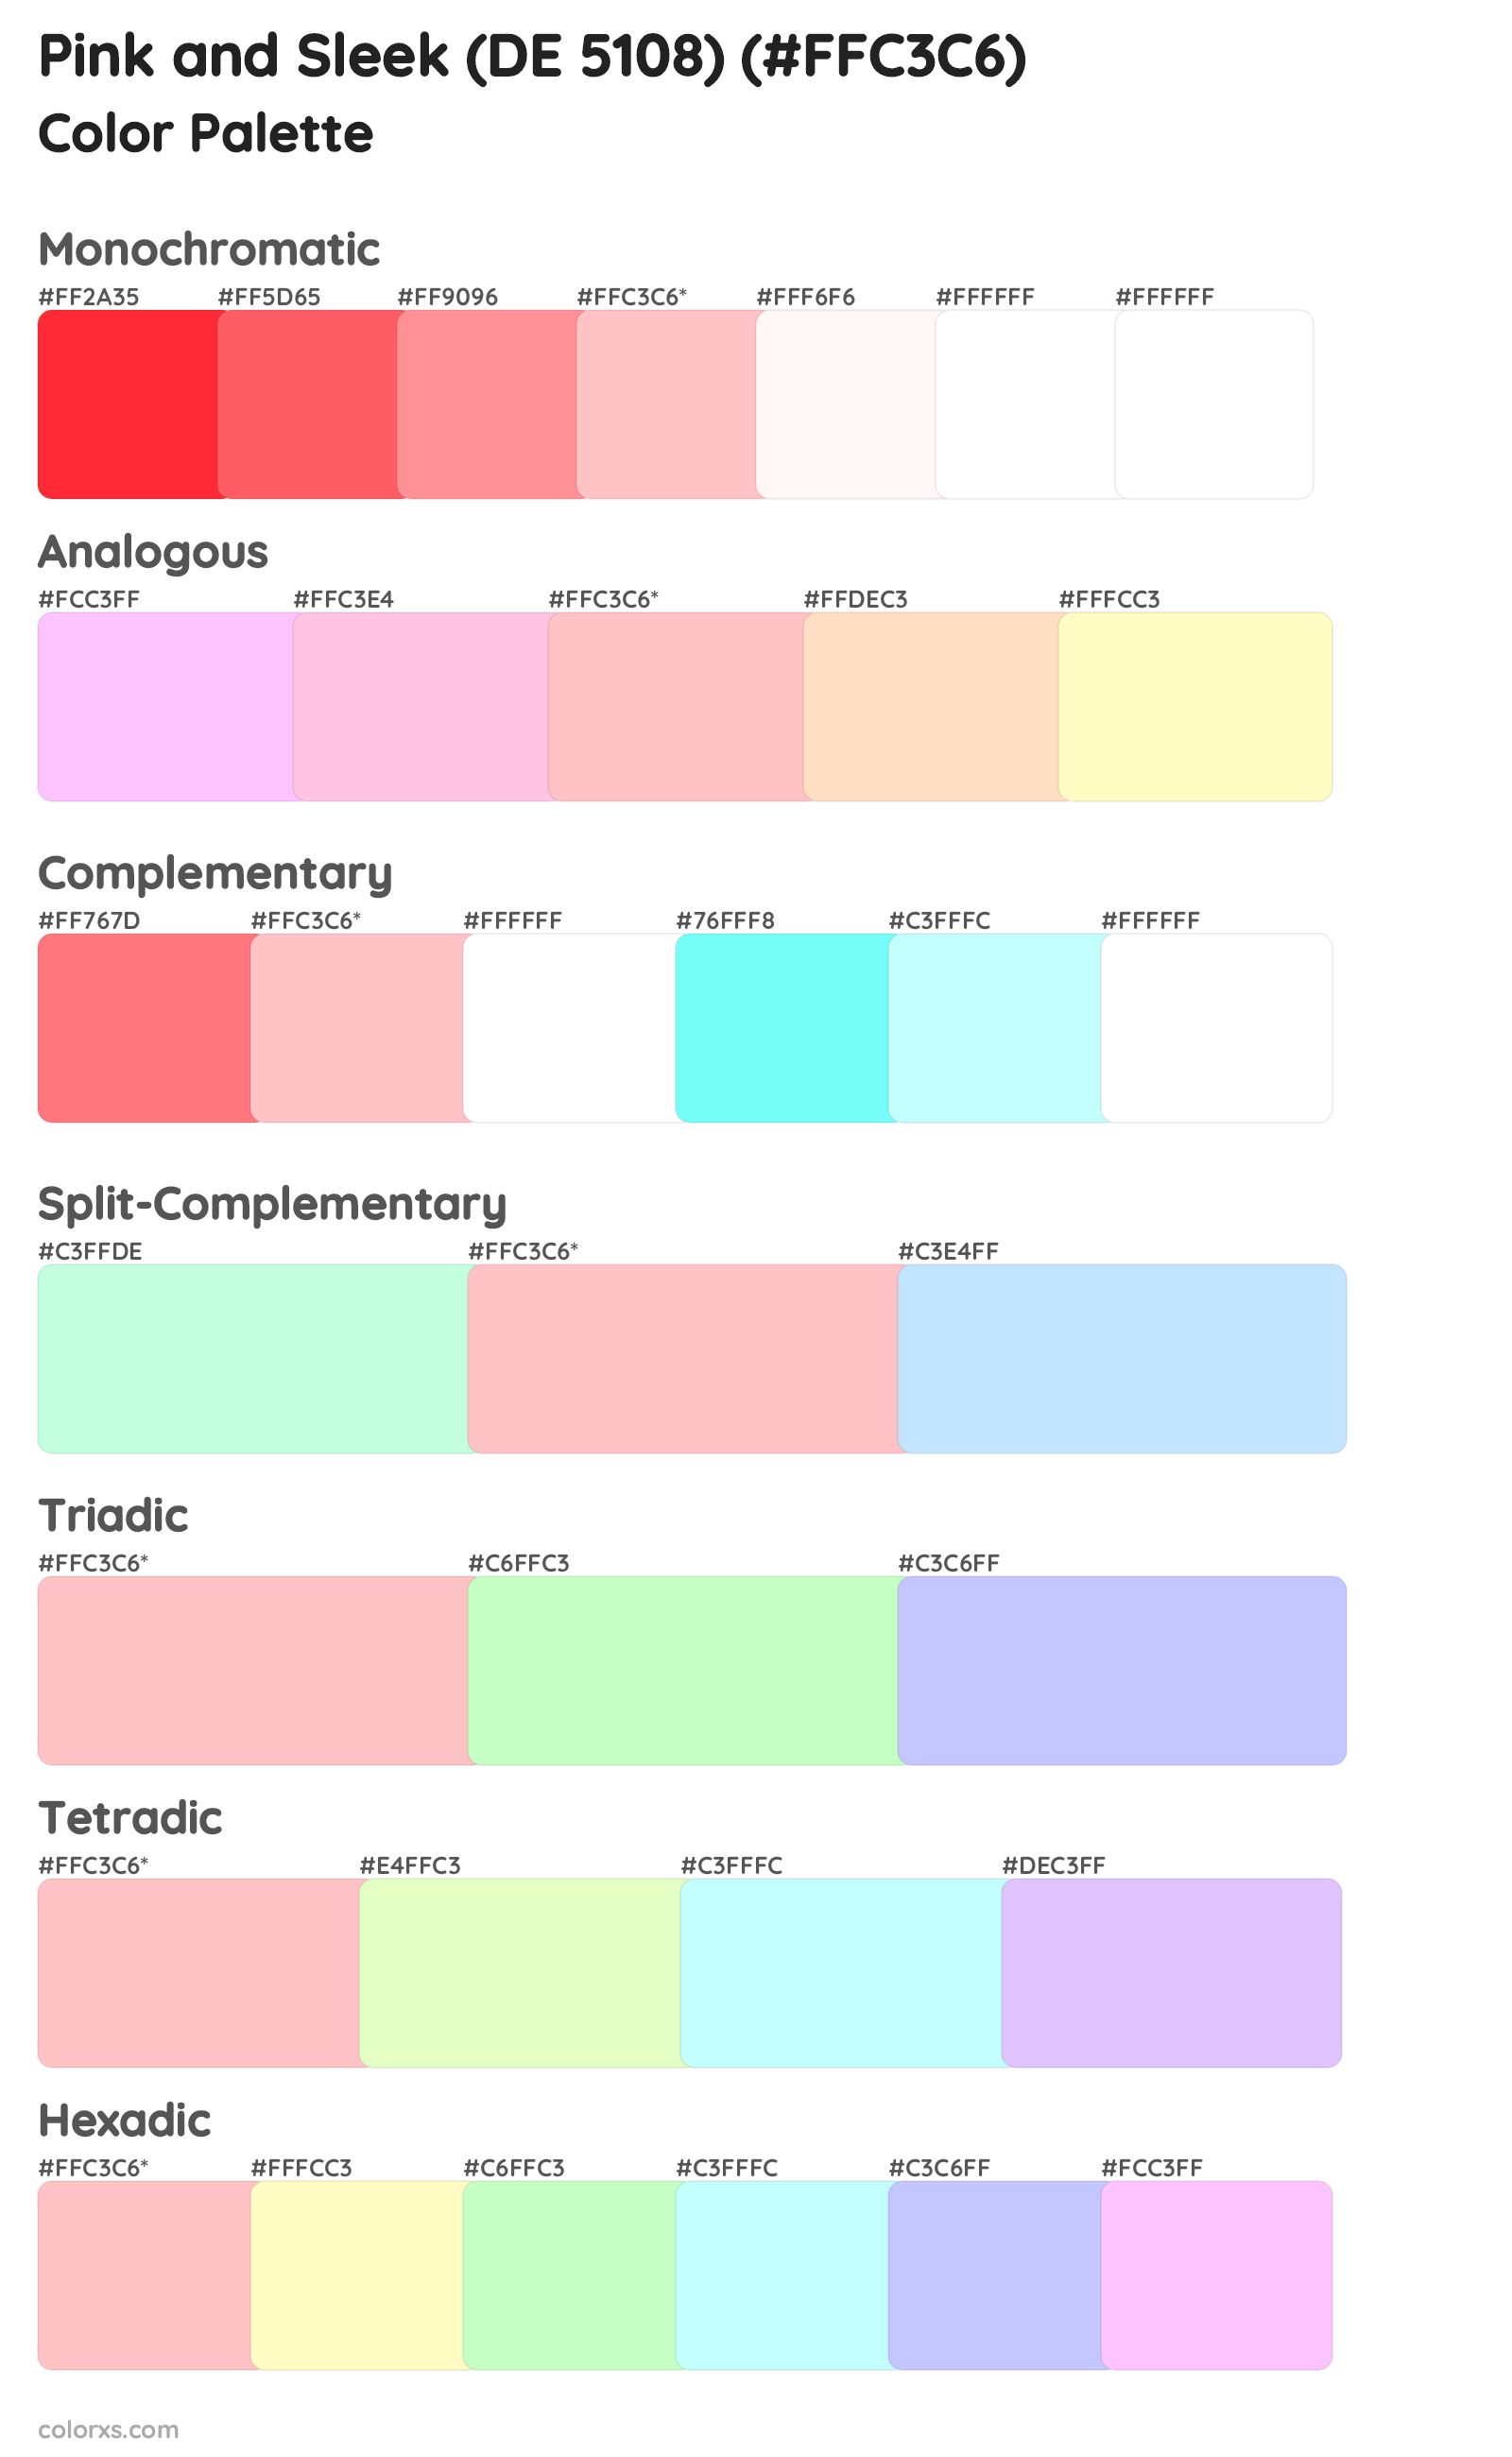 Pink and Sleek (DE 5108) Color Scheme Palettes